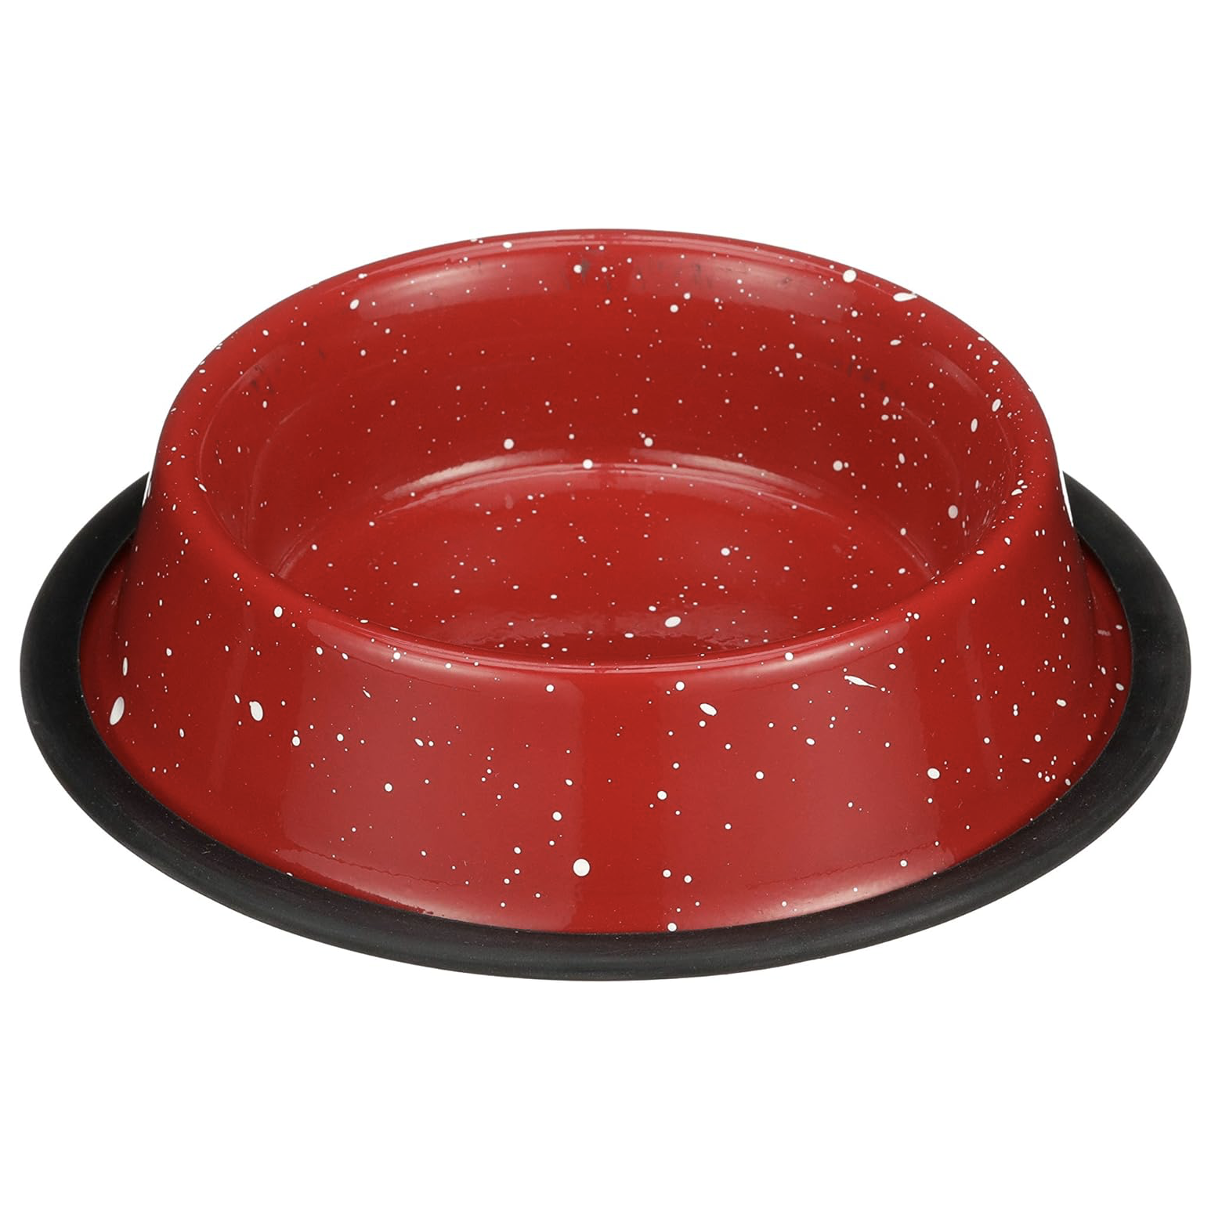 red dog bowl